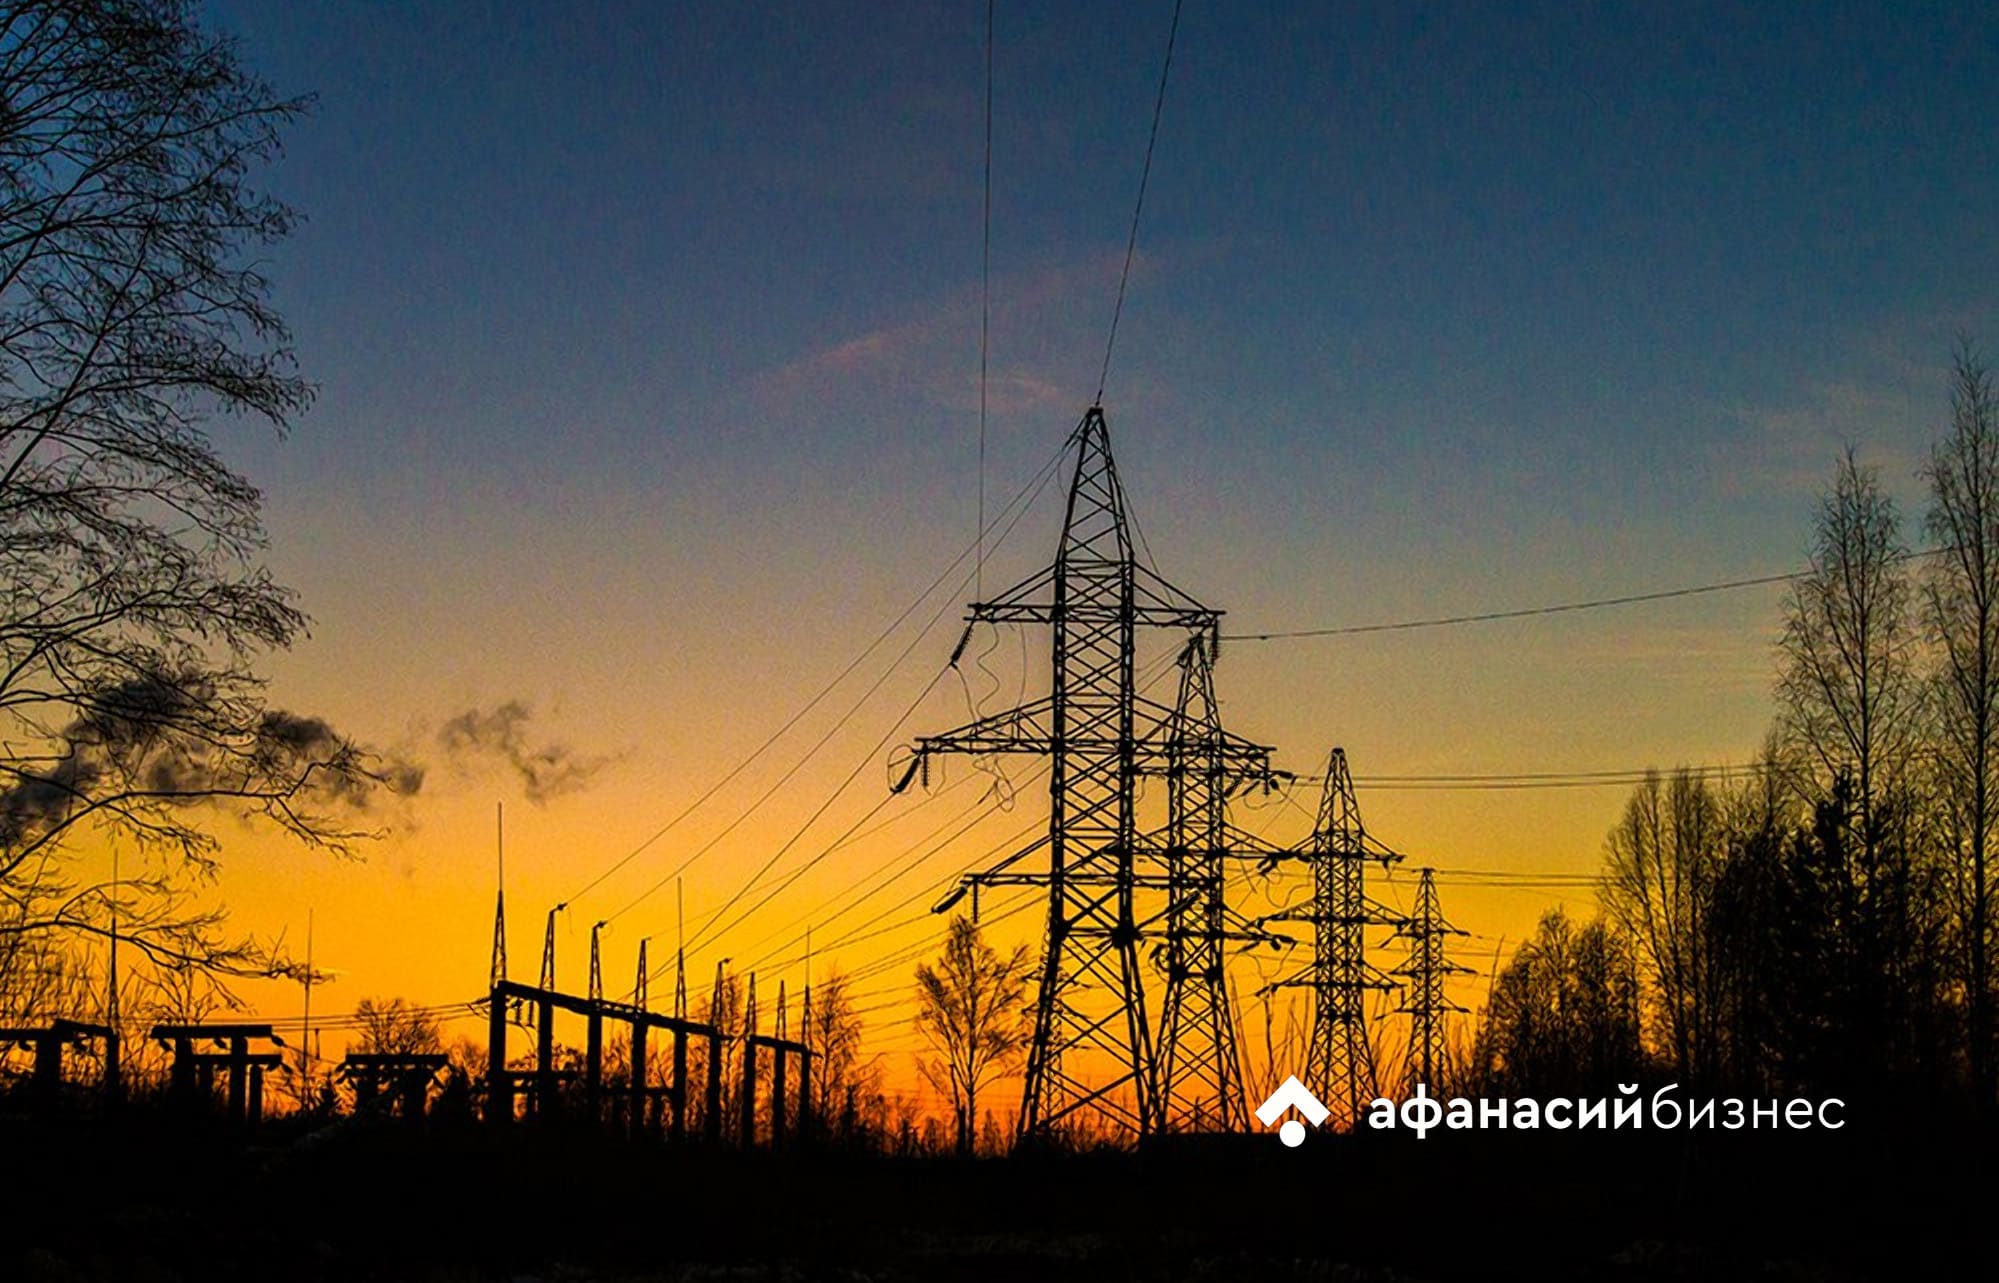 Ситуация с нарушенным электроснабжением в Торопецком районе на контроле губернатора Тверской области